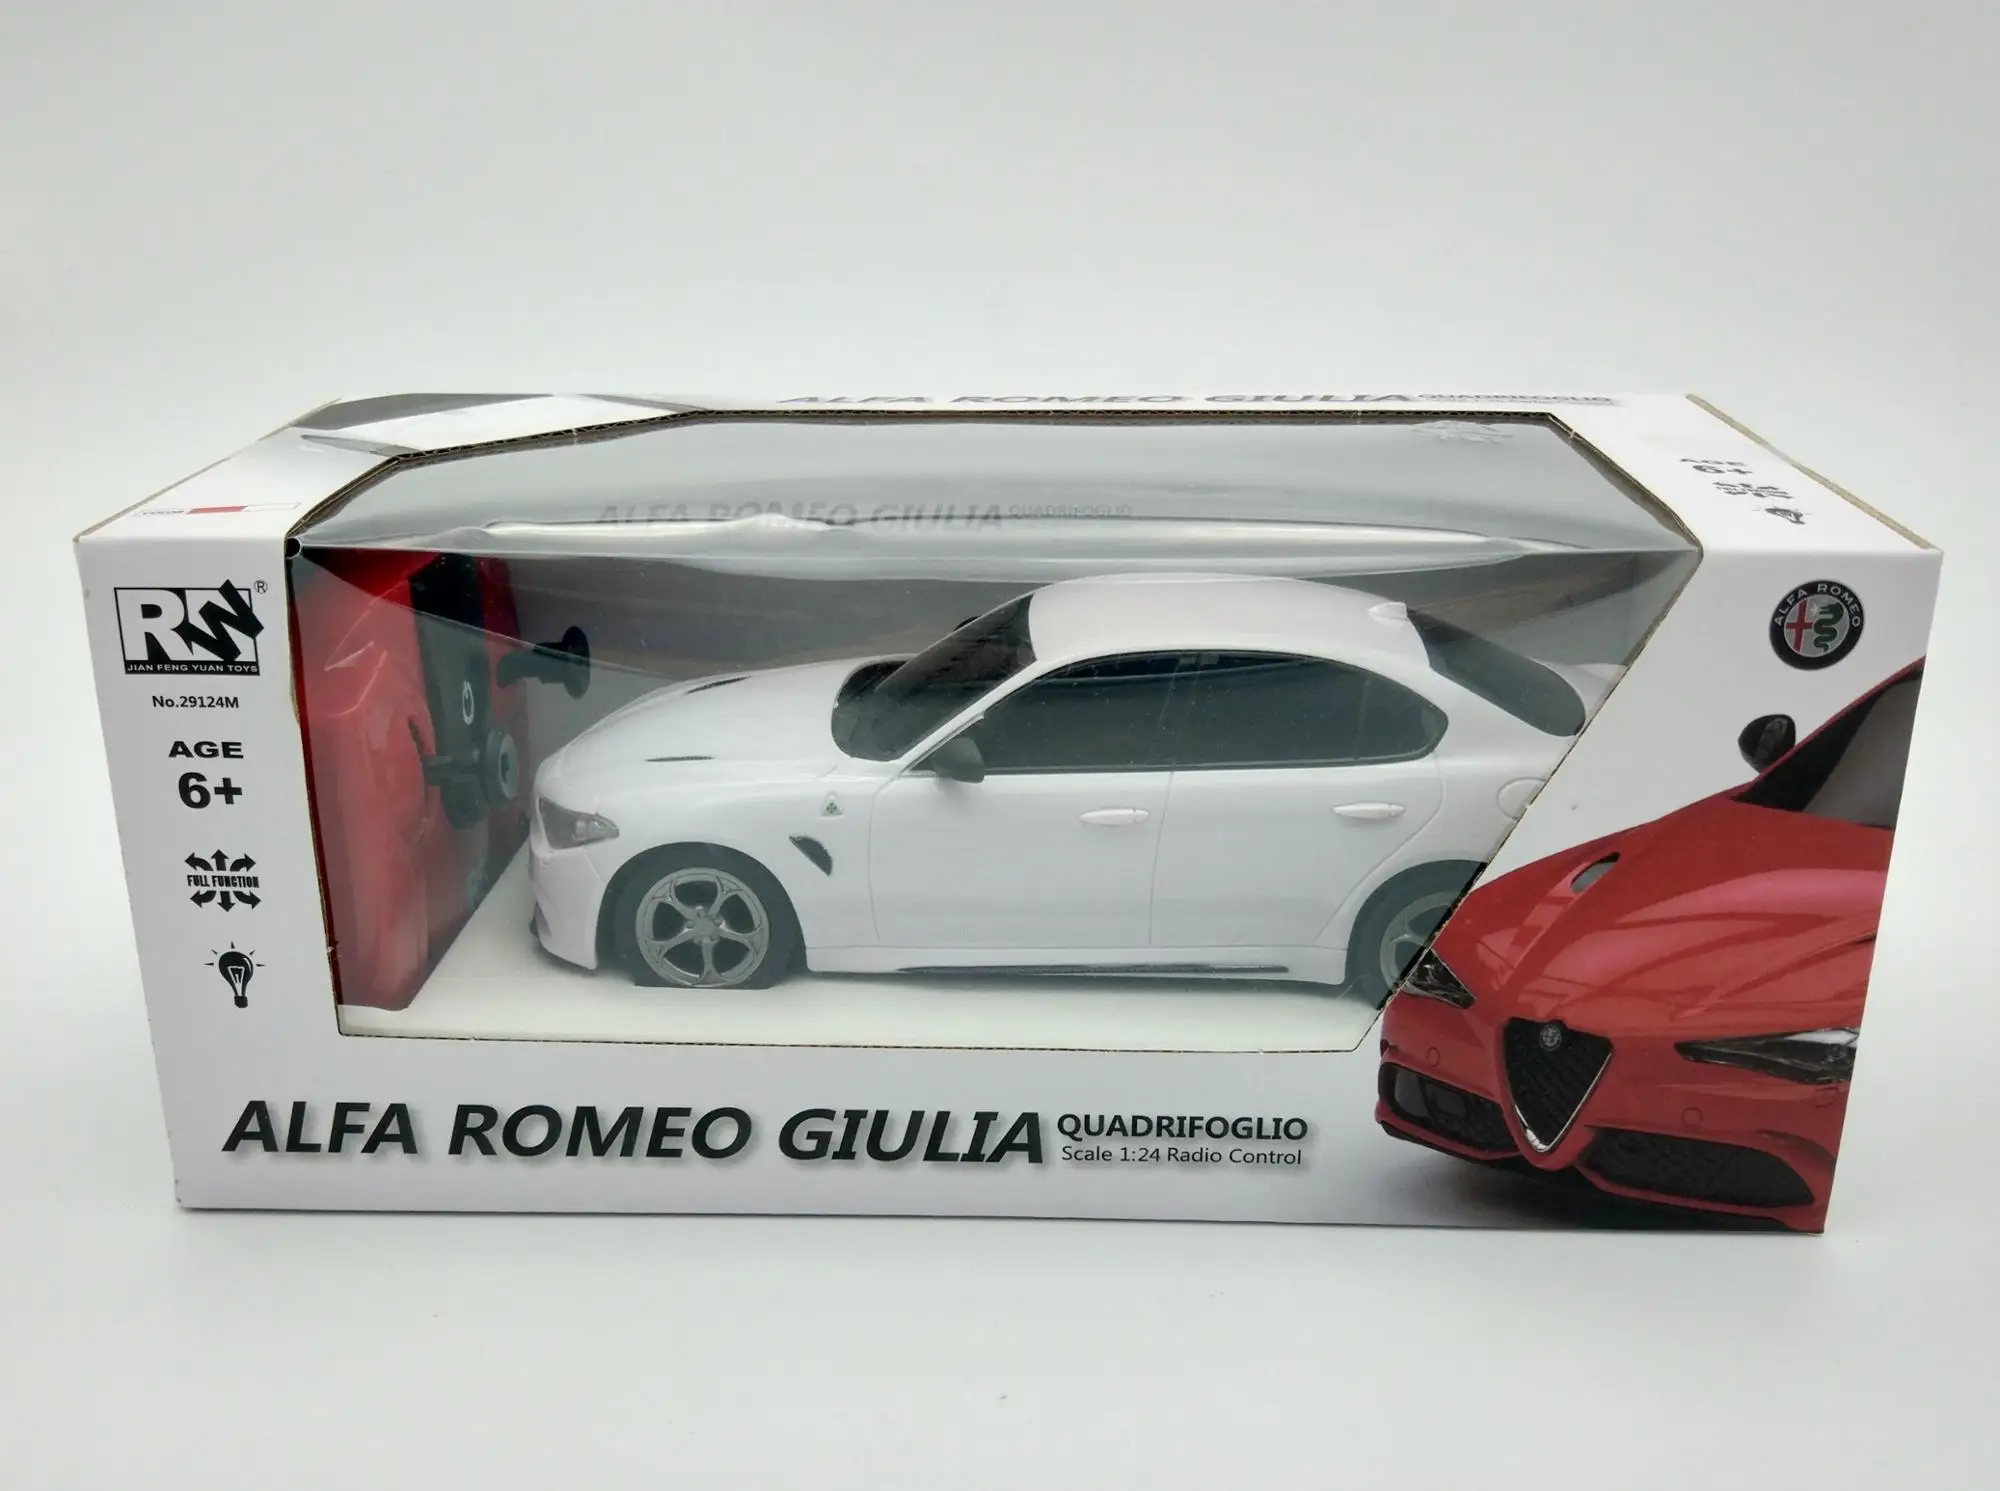 1 18 scale 2.4G rc car radio control car Alfa Romeo Giulia car With light